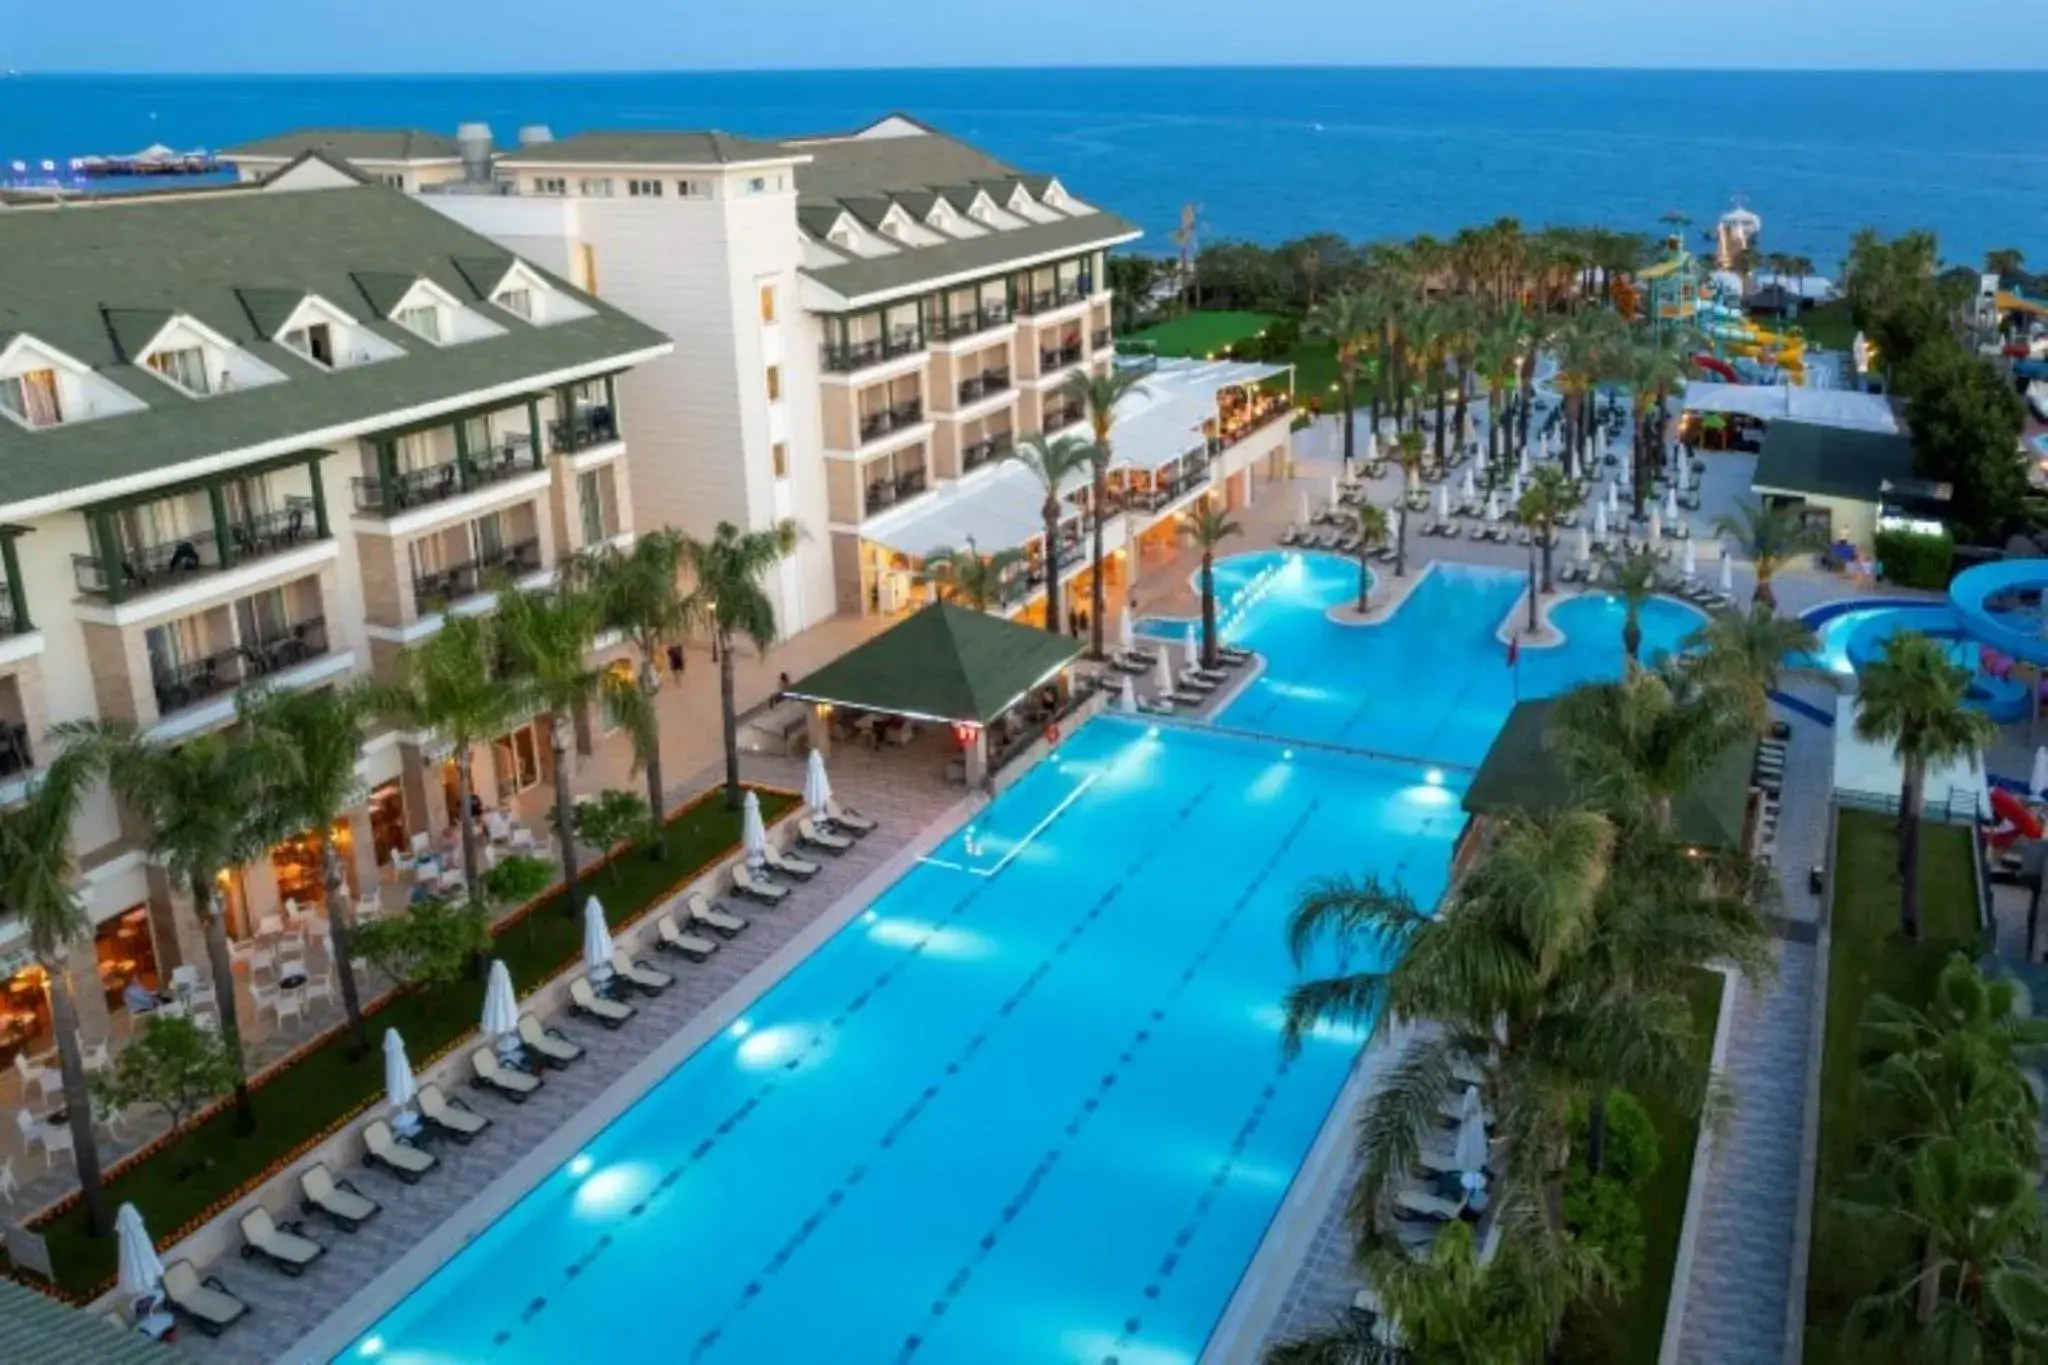 Property building, Pool View in Alva Donna Beach Resort Comfort